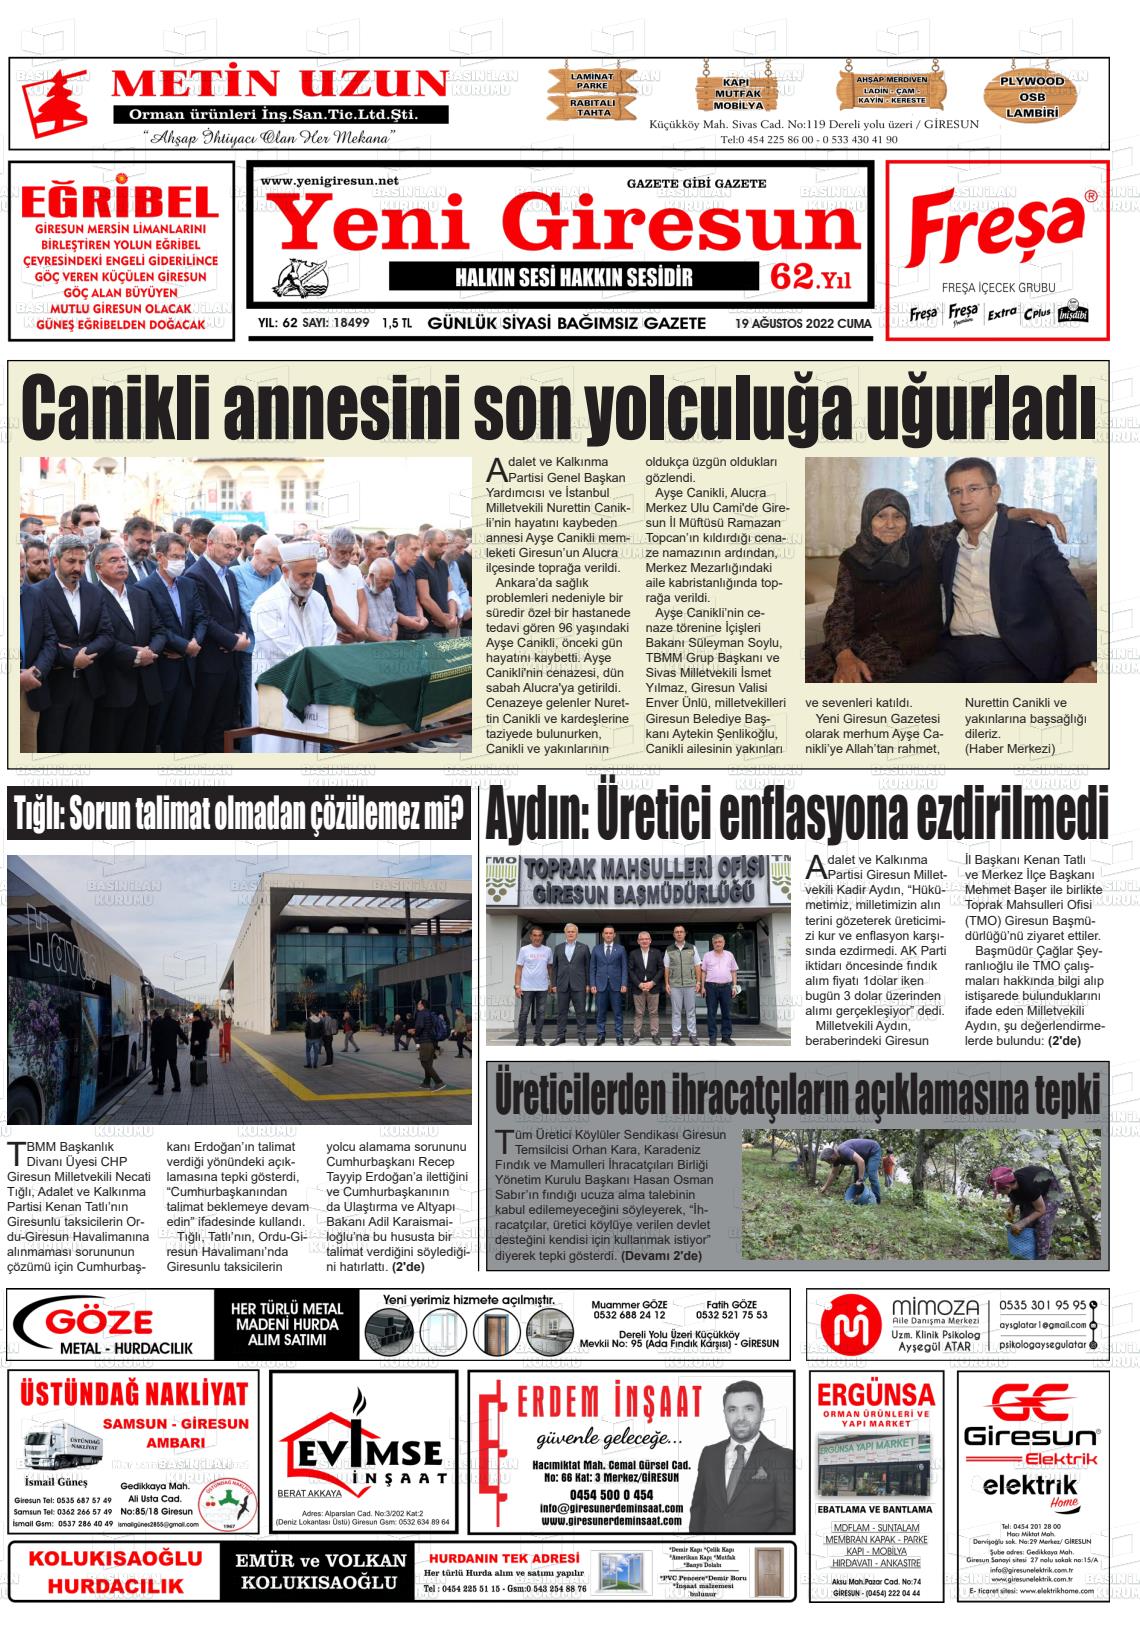 19 Ağustos 2022 Yeni Giresun Gazete Manşeti